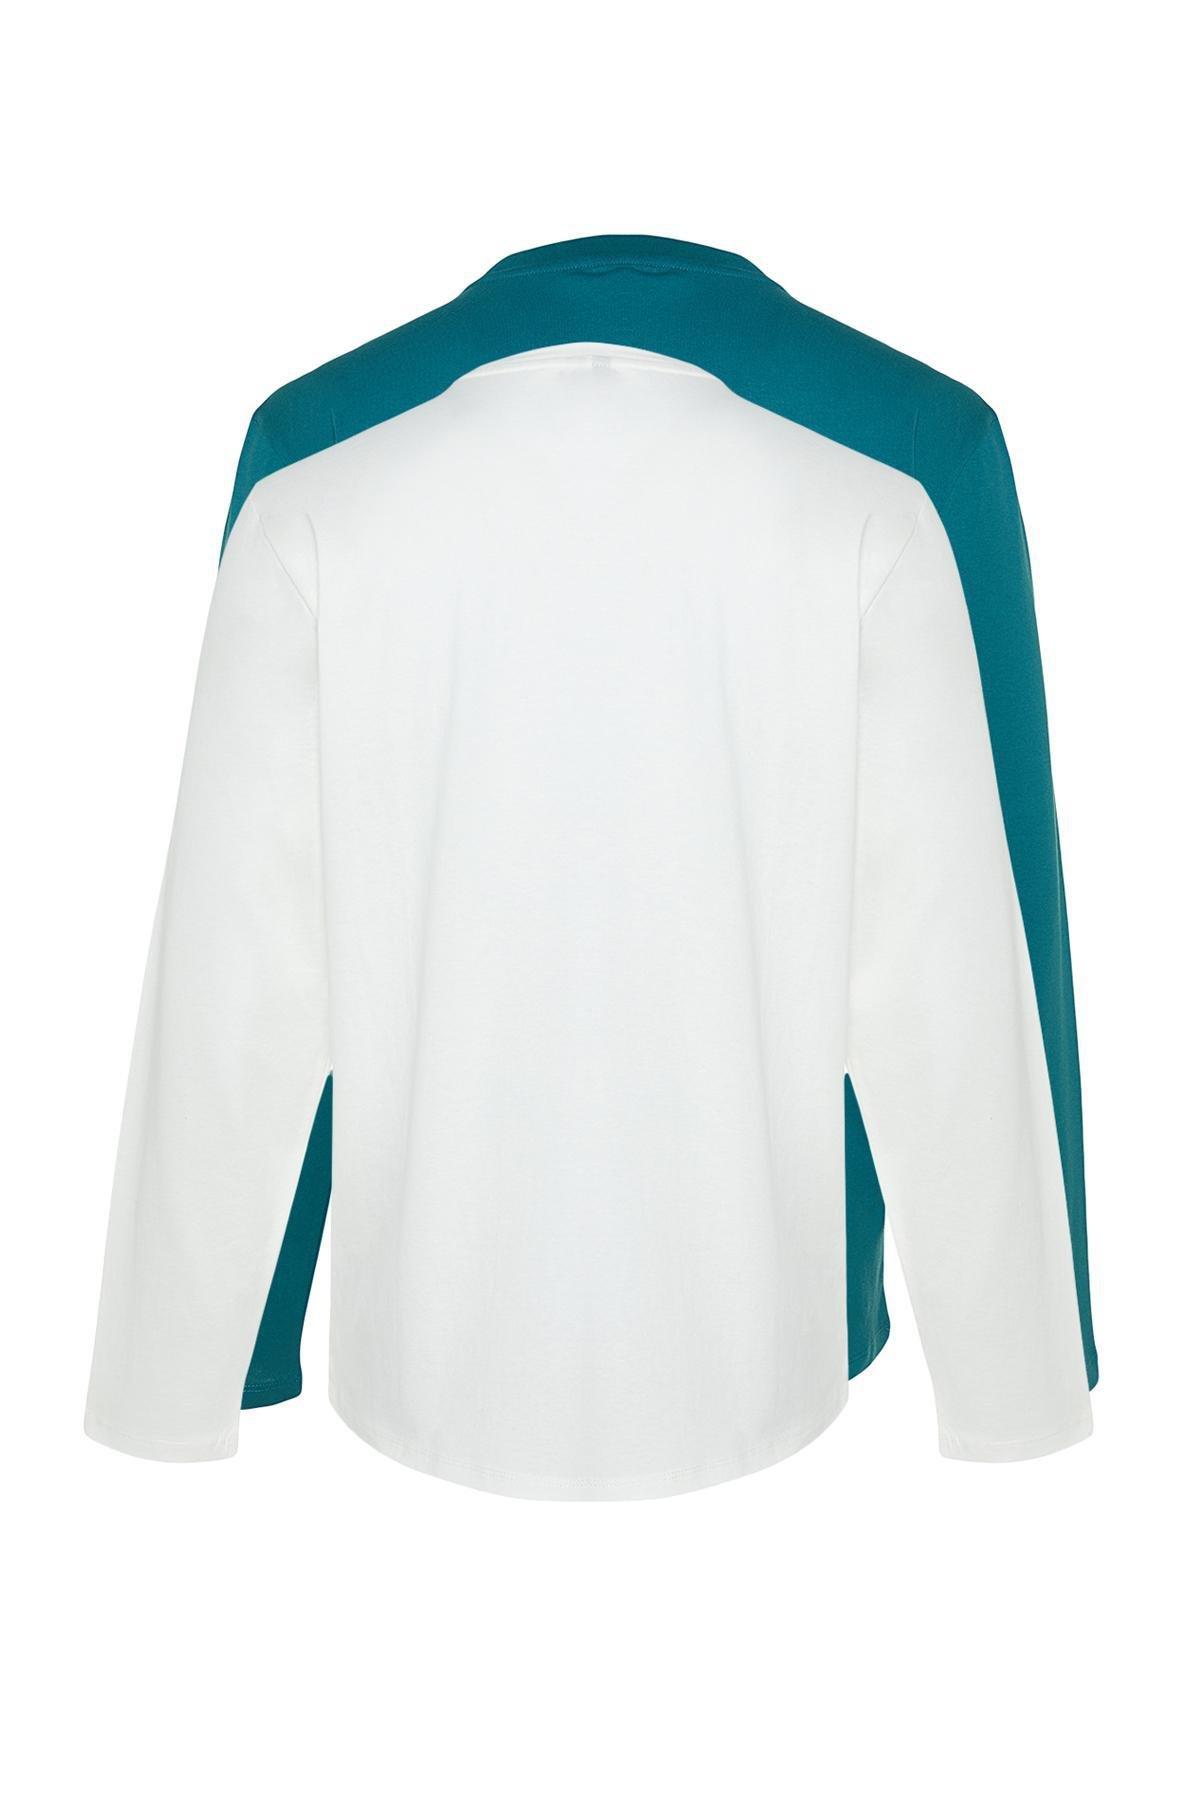 Trendyol - Multicolour Long Sleeve T-Shirt, Set Of 2